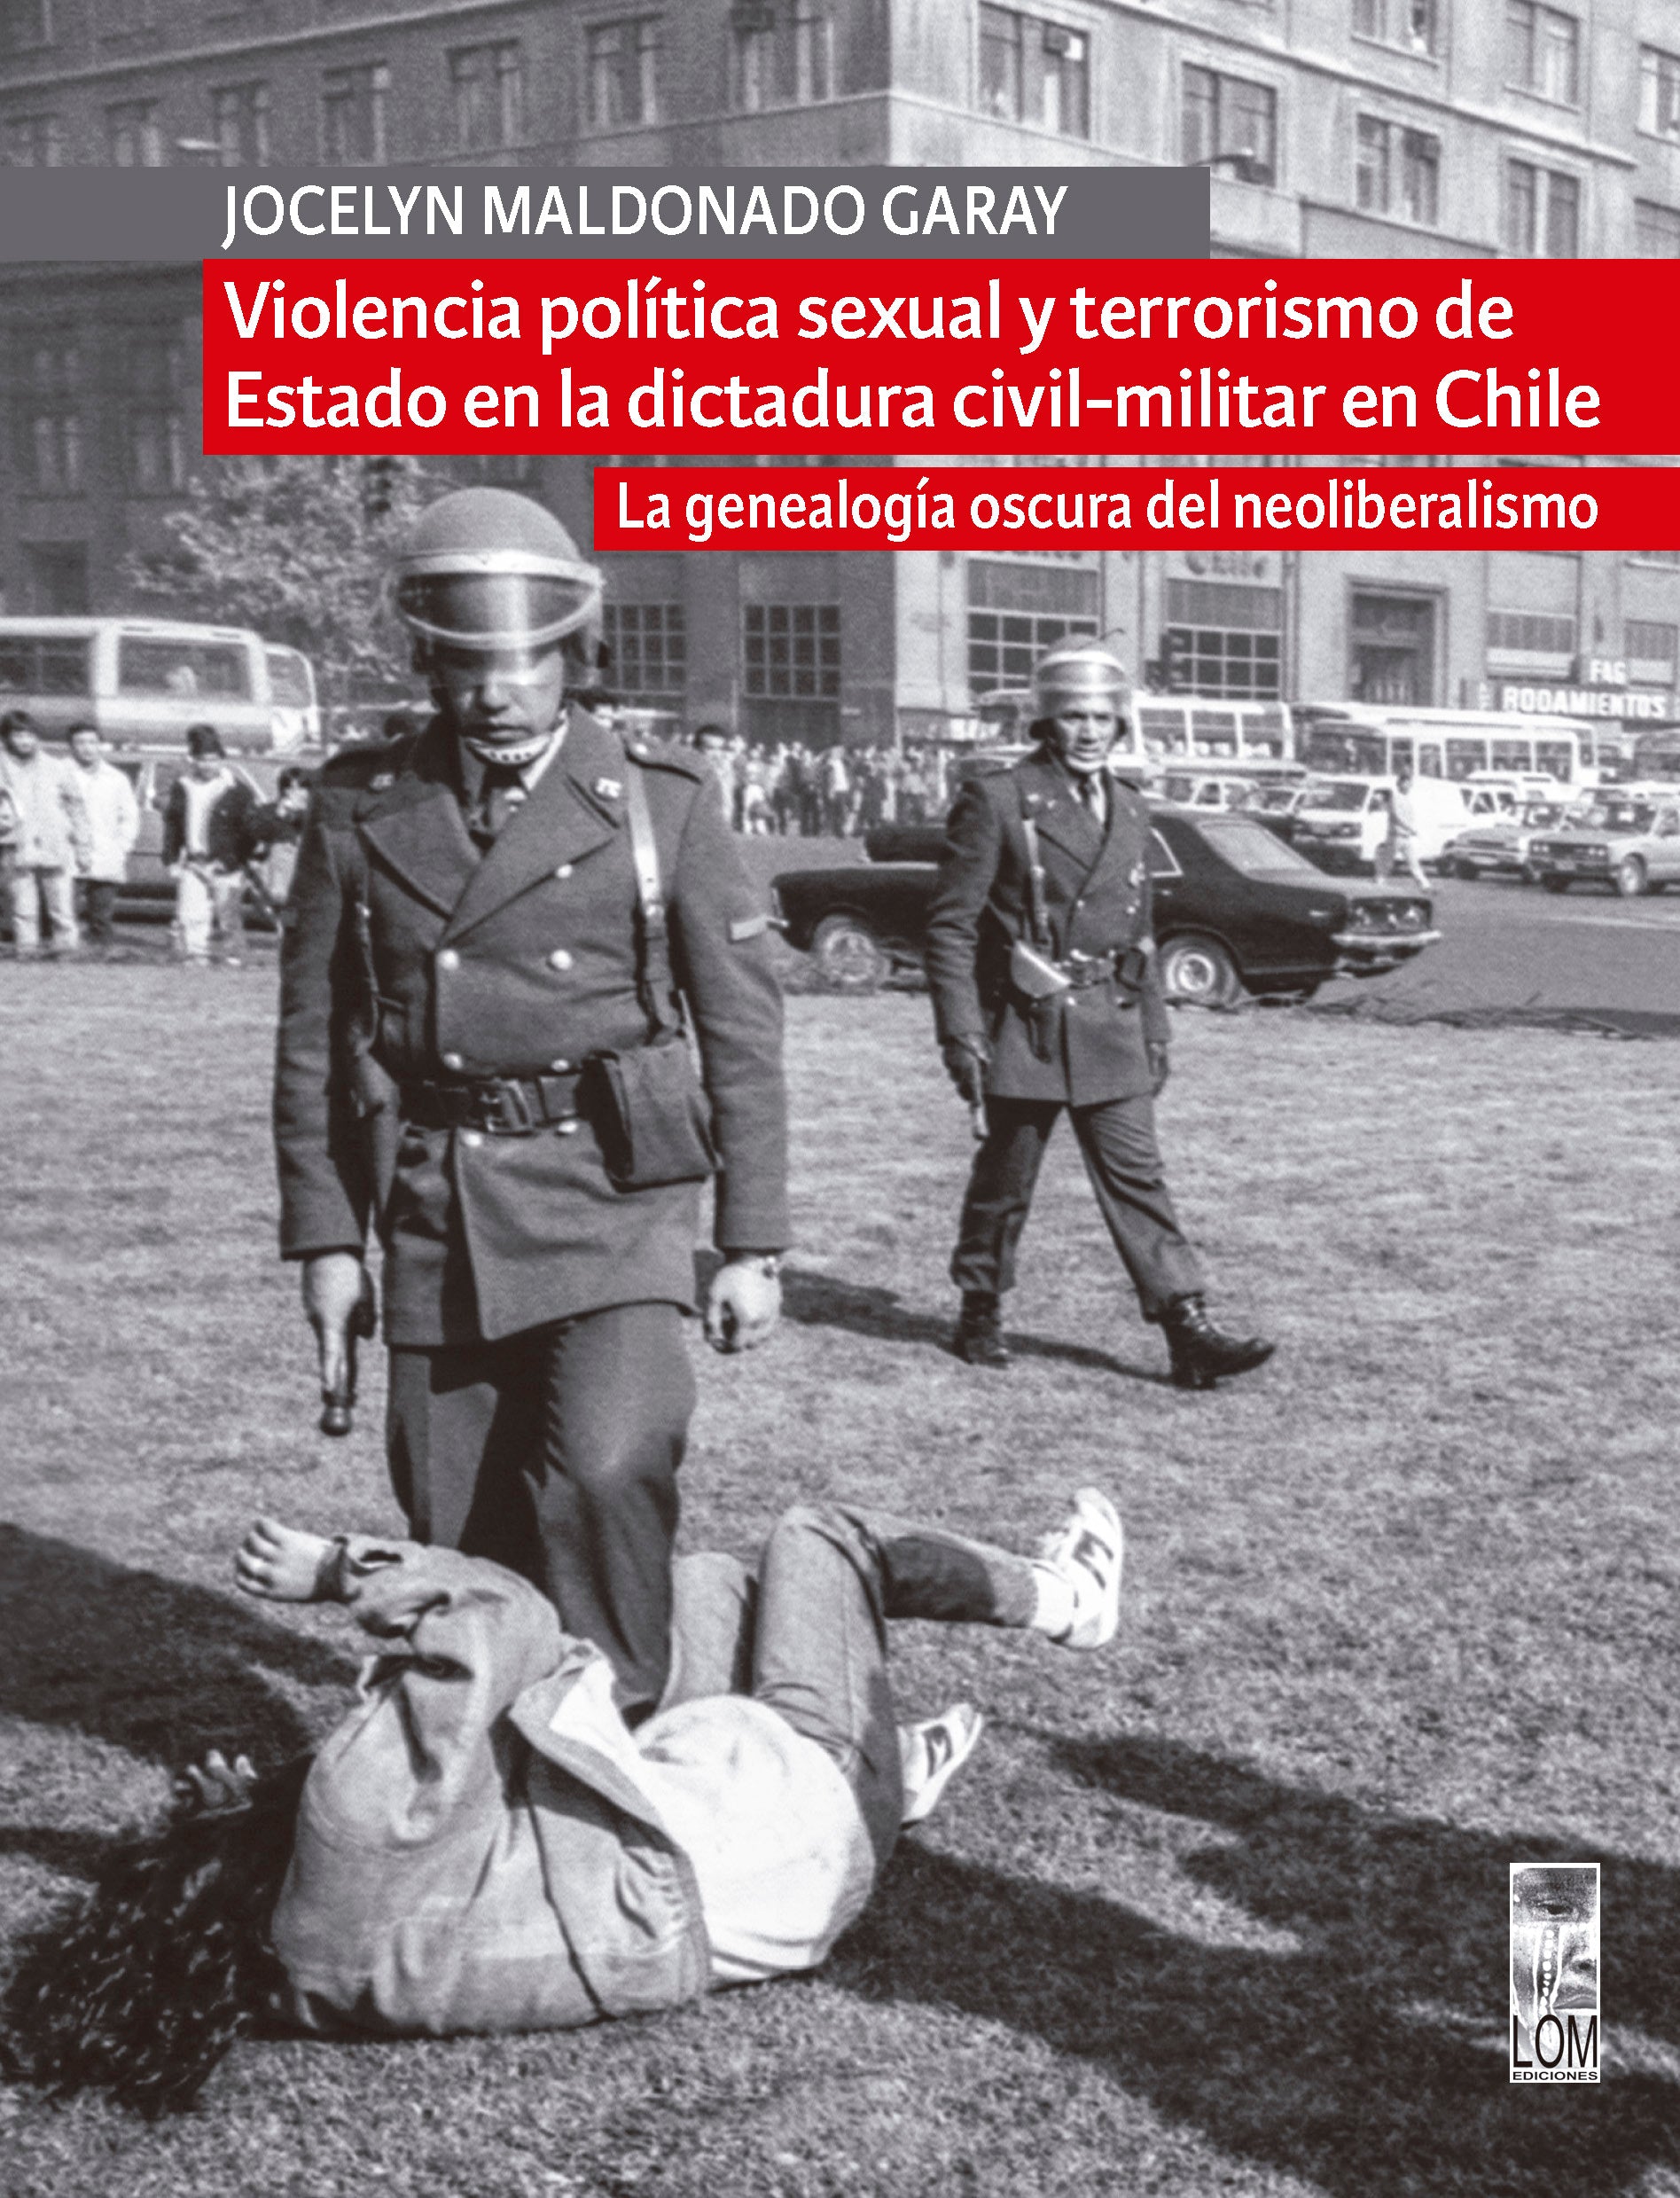 Violencia política sexual y terrorismo de Estado en la dictadura civil-militar en Chile: la violencia como herramienta de control y represión sistemática